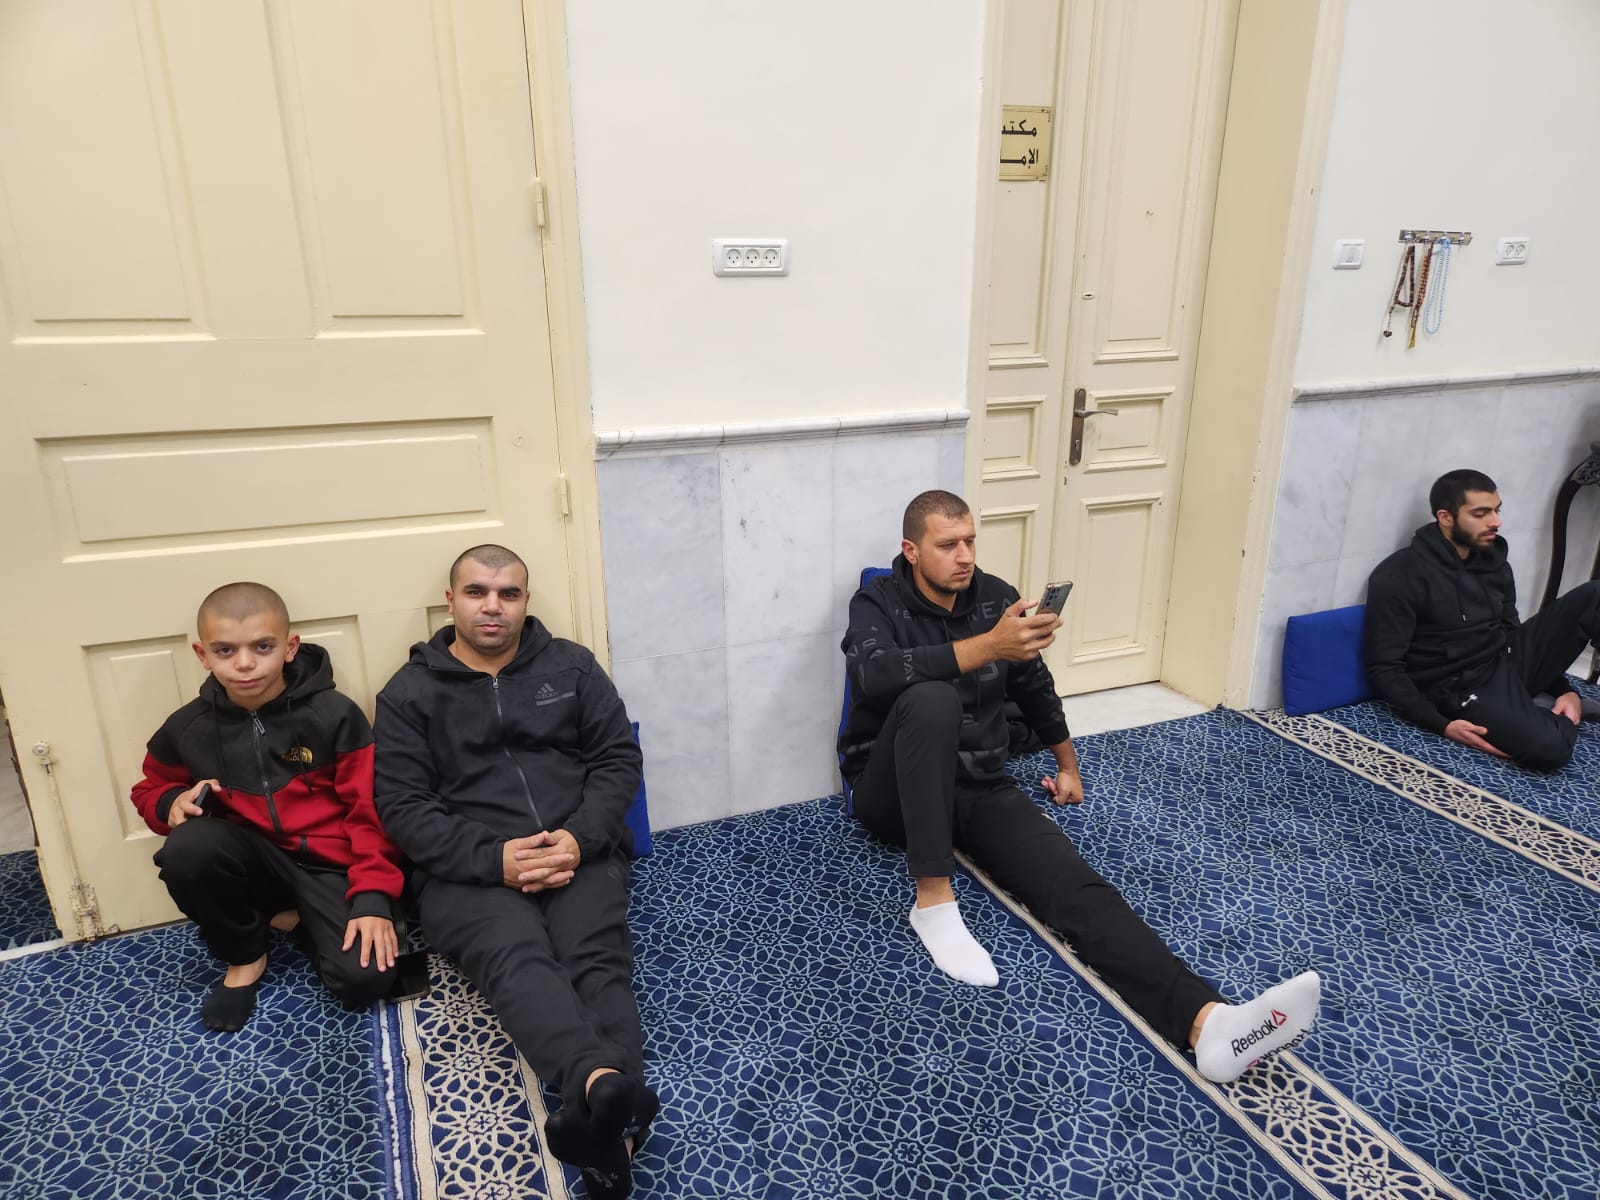 يافا: بالصور الأمسية الإيمانية الأسبوعية (مجالس الإيمان) في مسجد النزهة